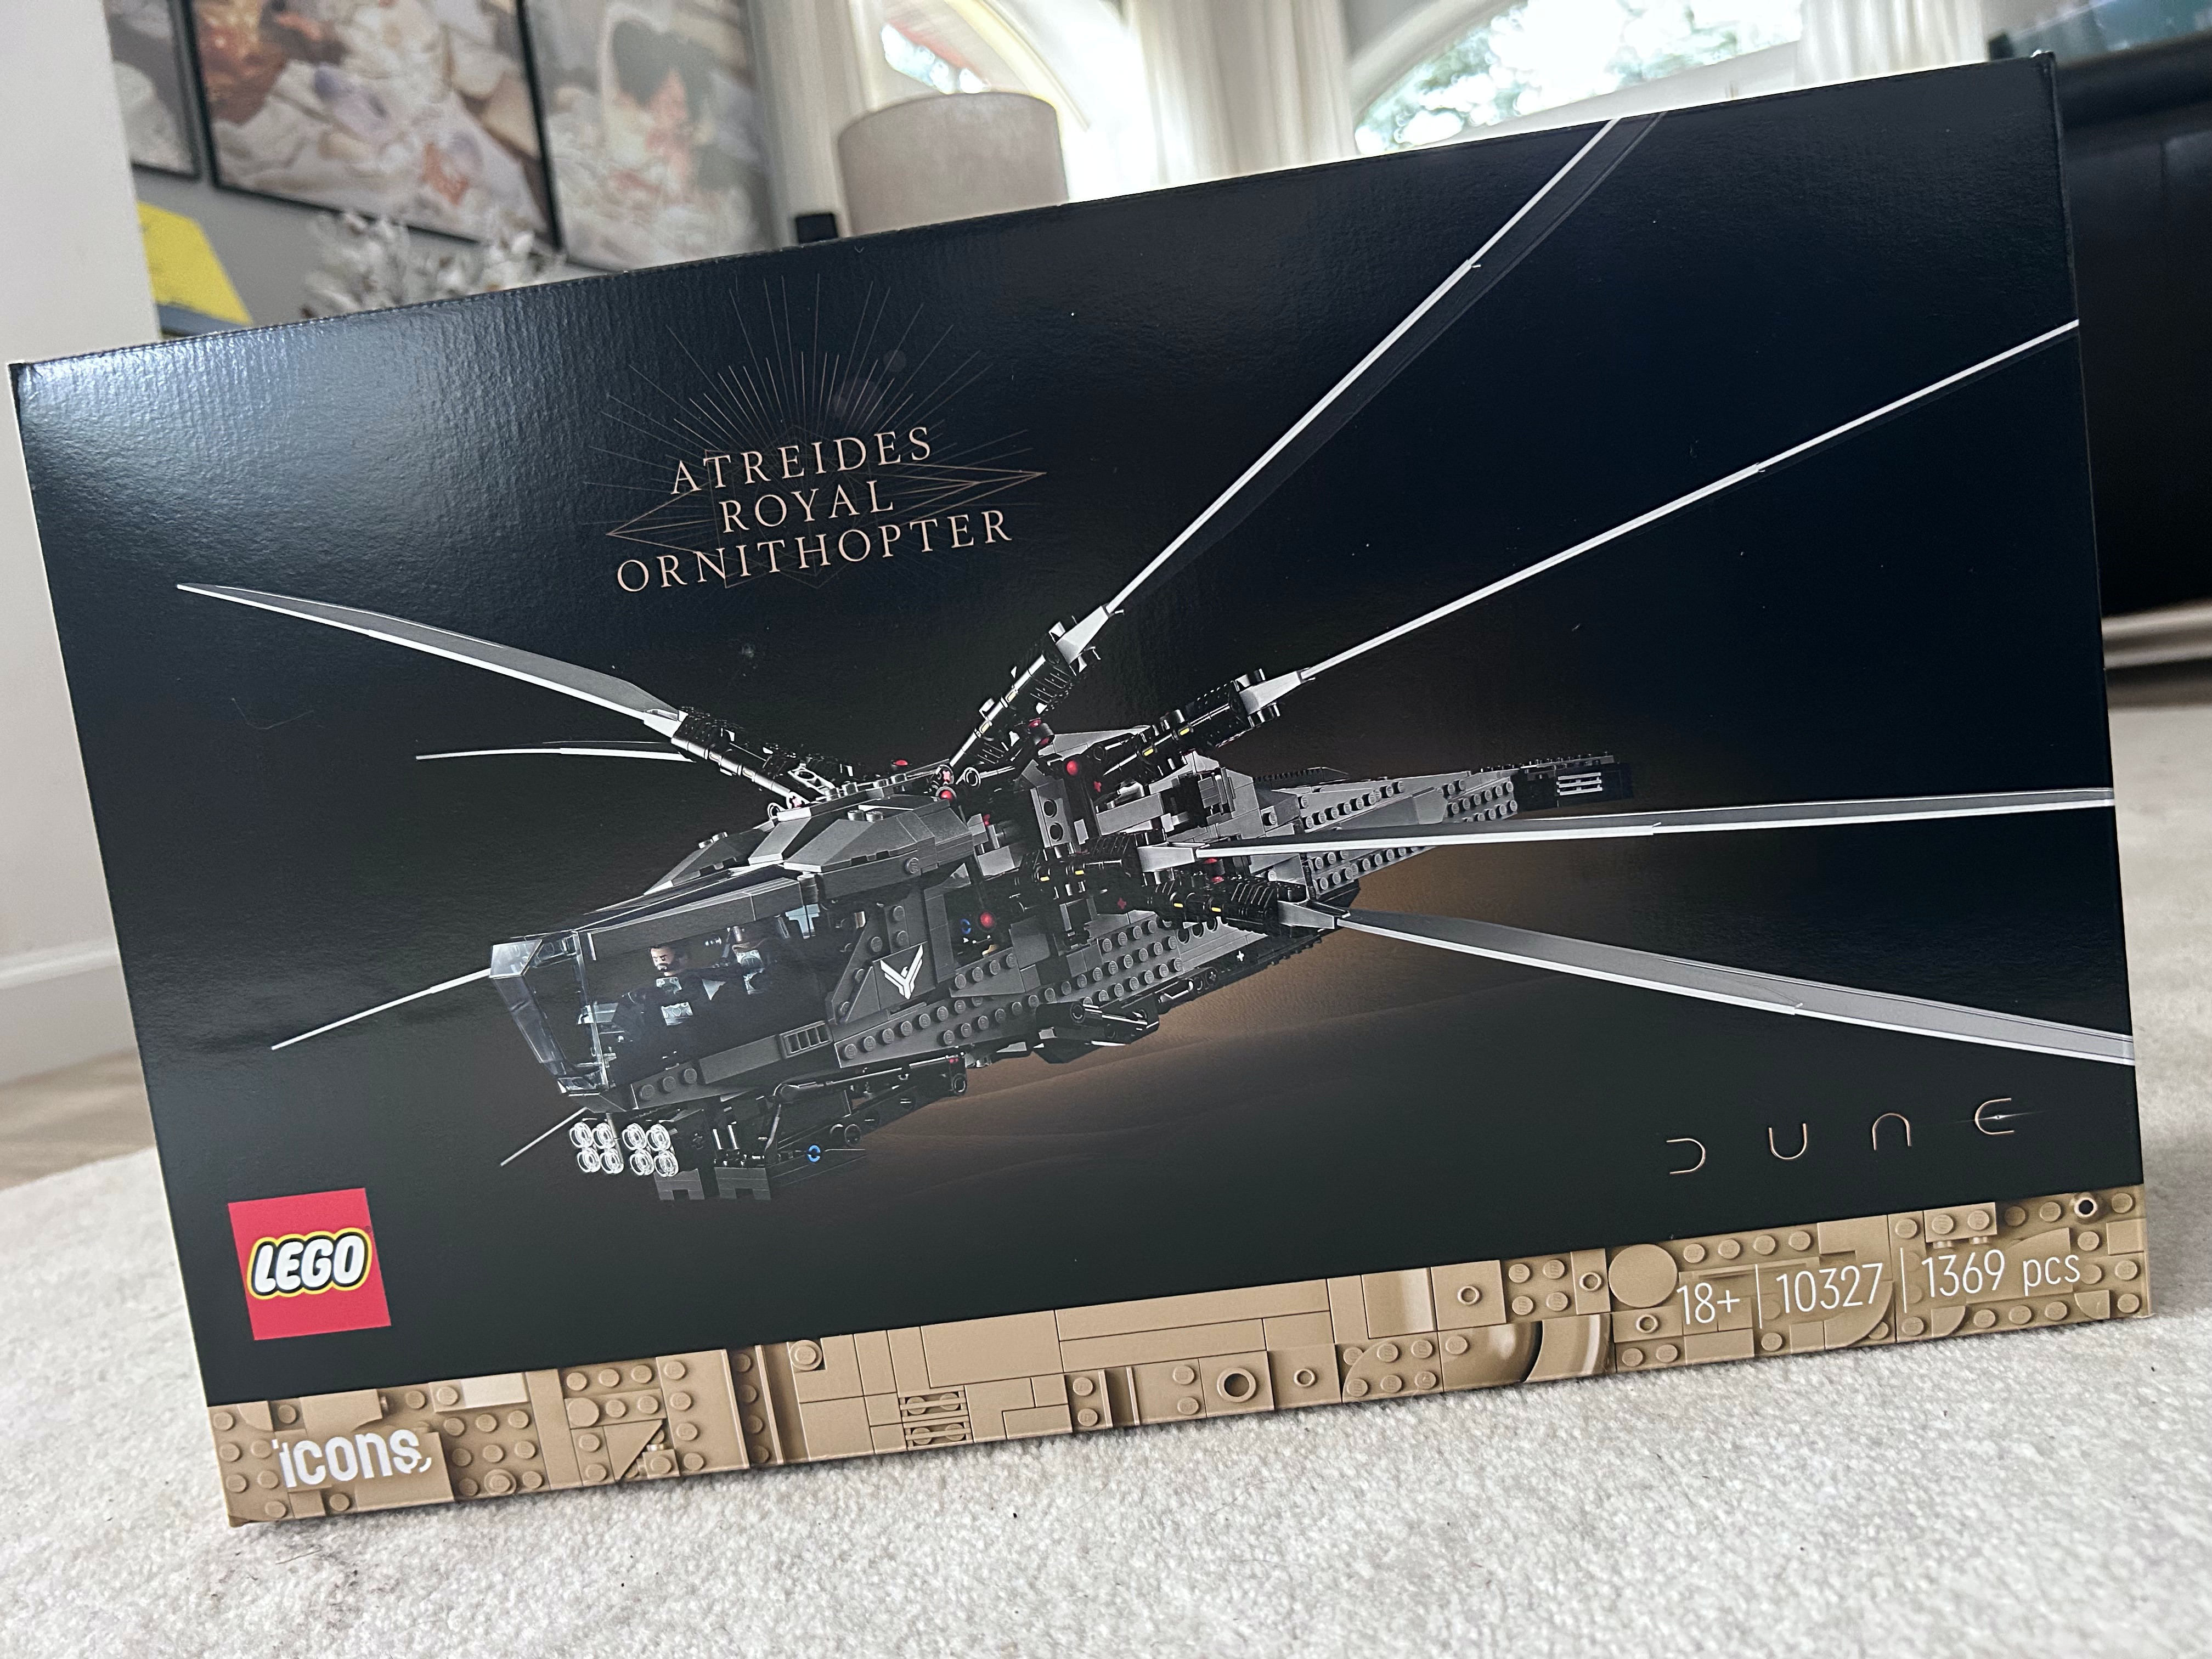 Składamy Ważkę, czyli Atreides Royal Ornithopter od LEGO